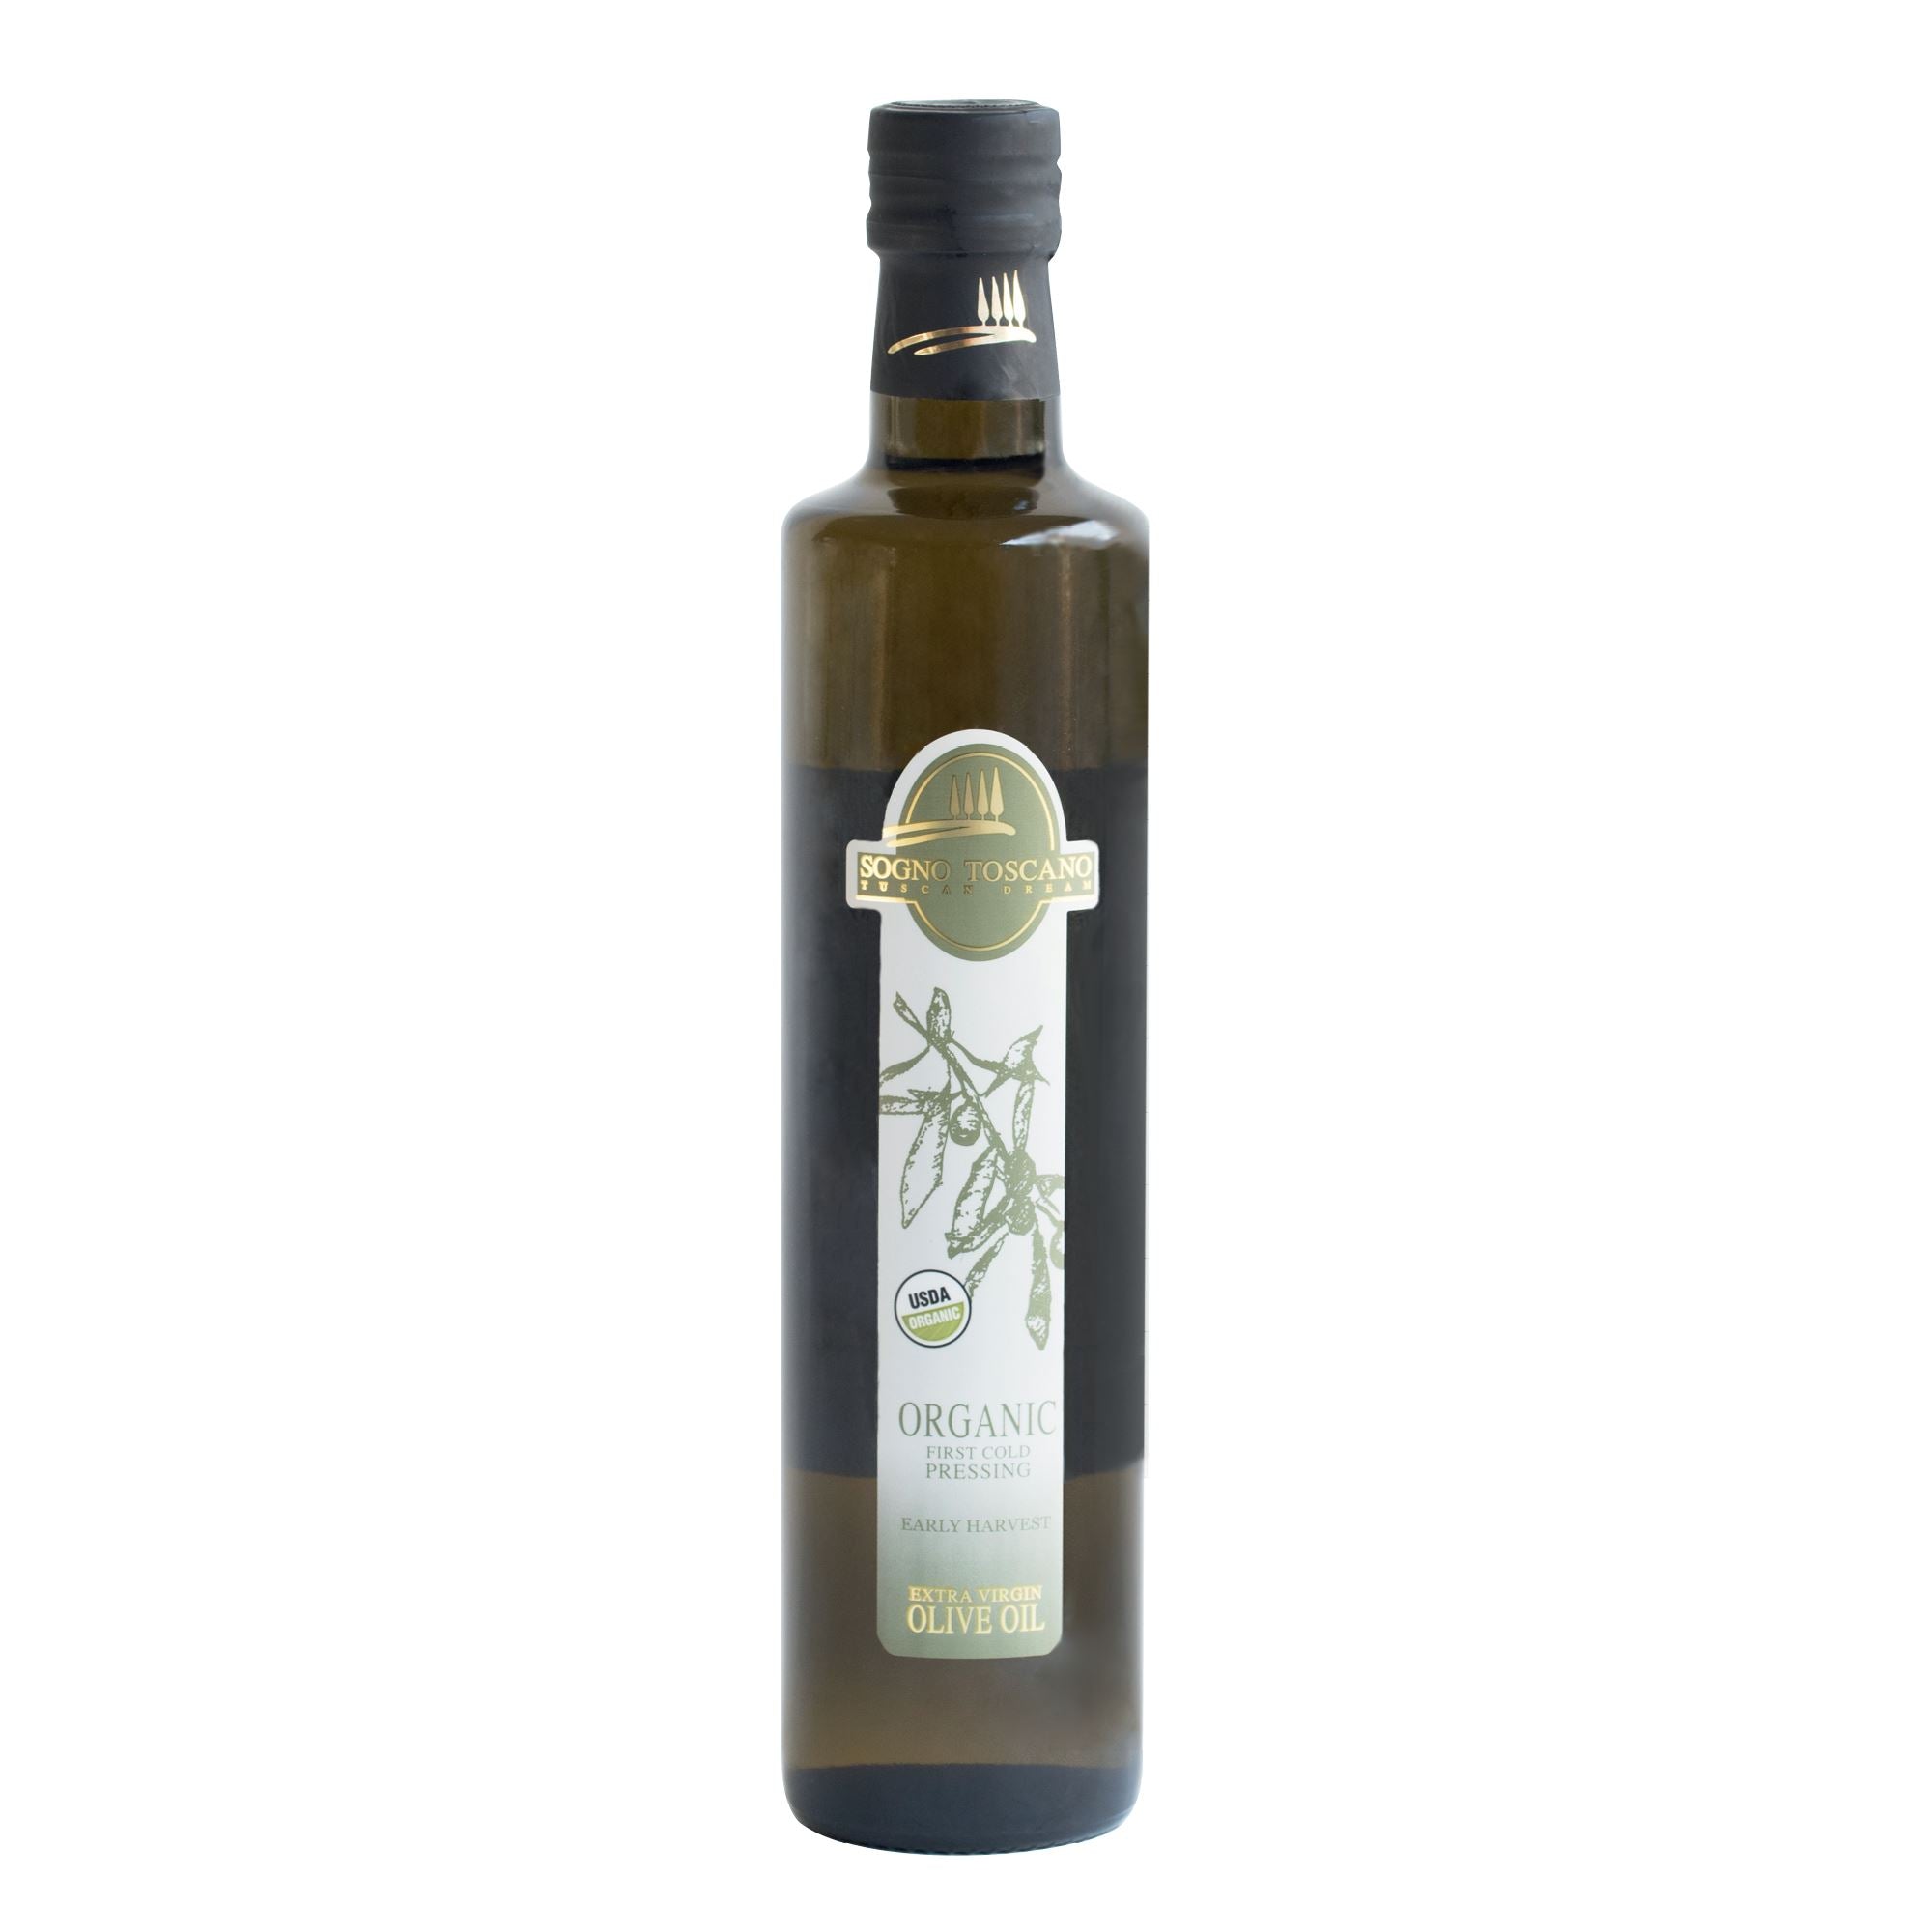 Super V Olive Oil SOGNO TOSCANO